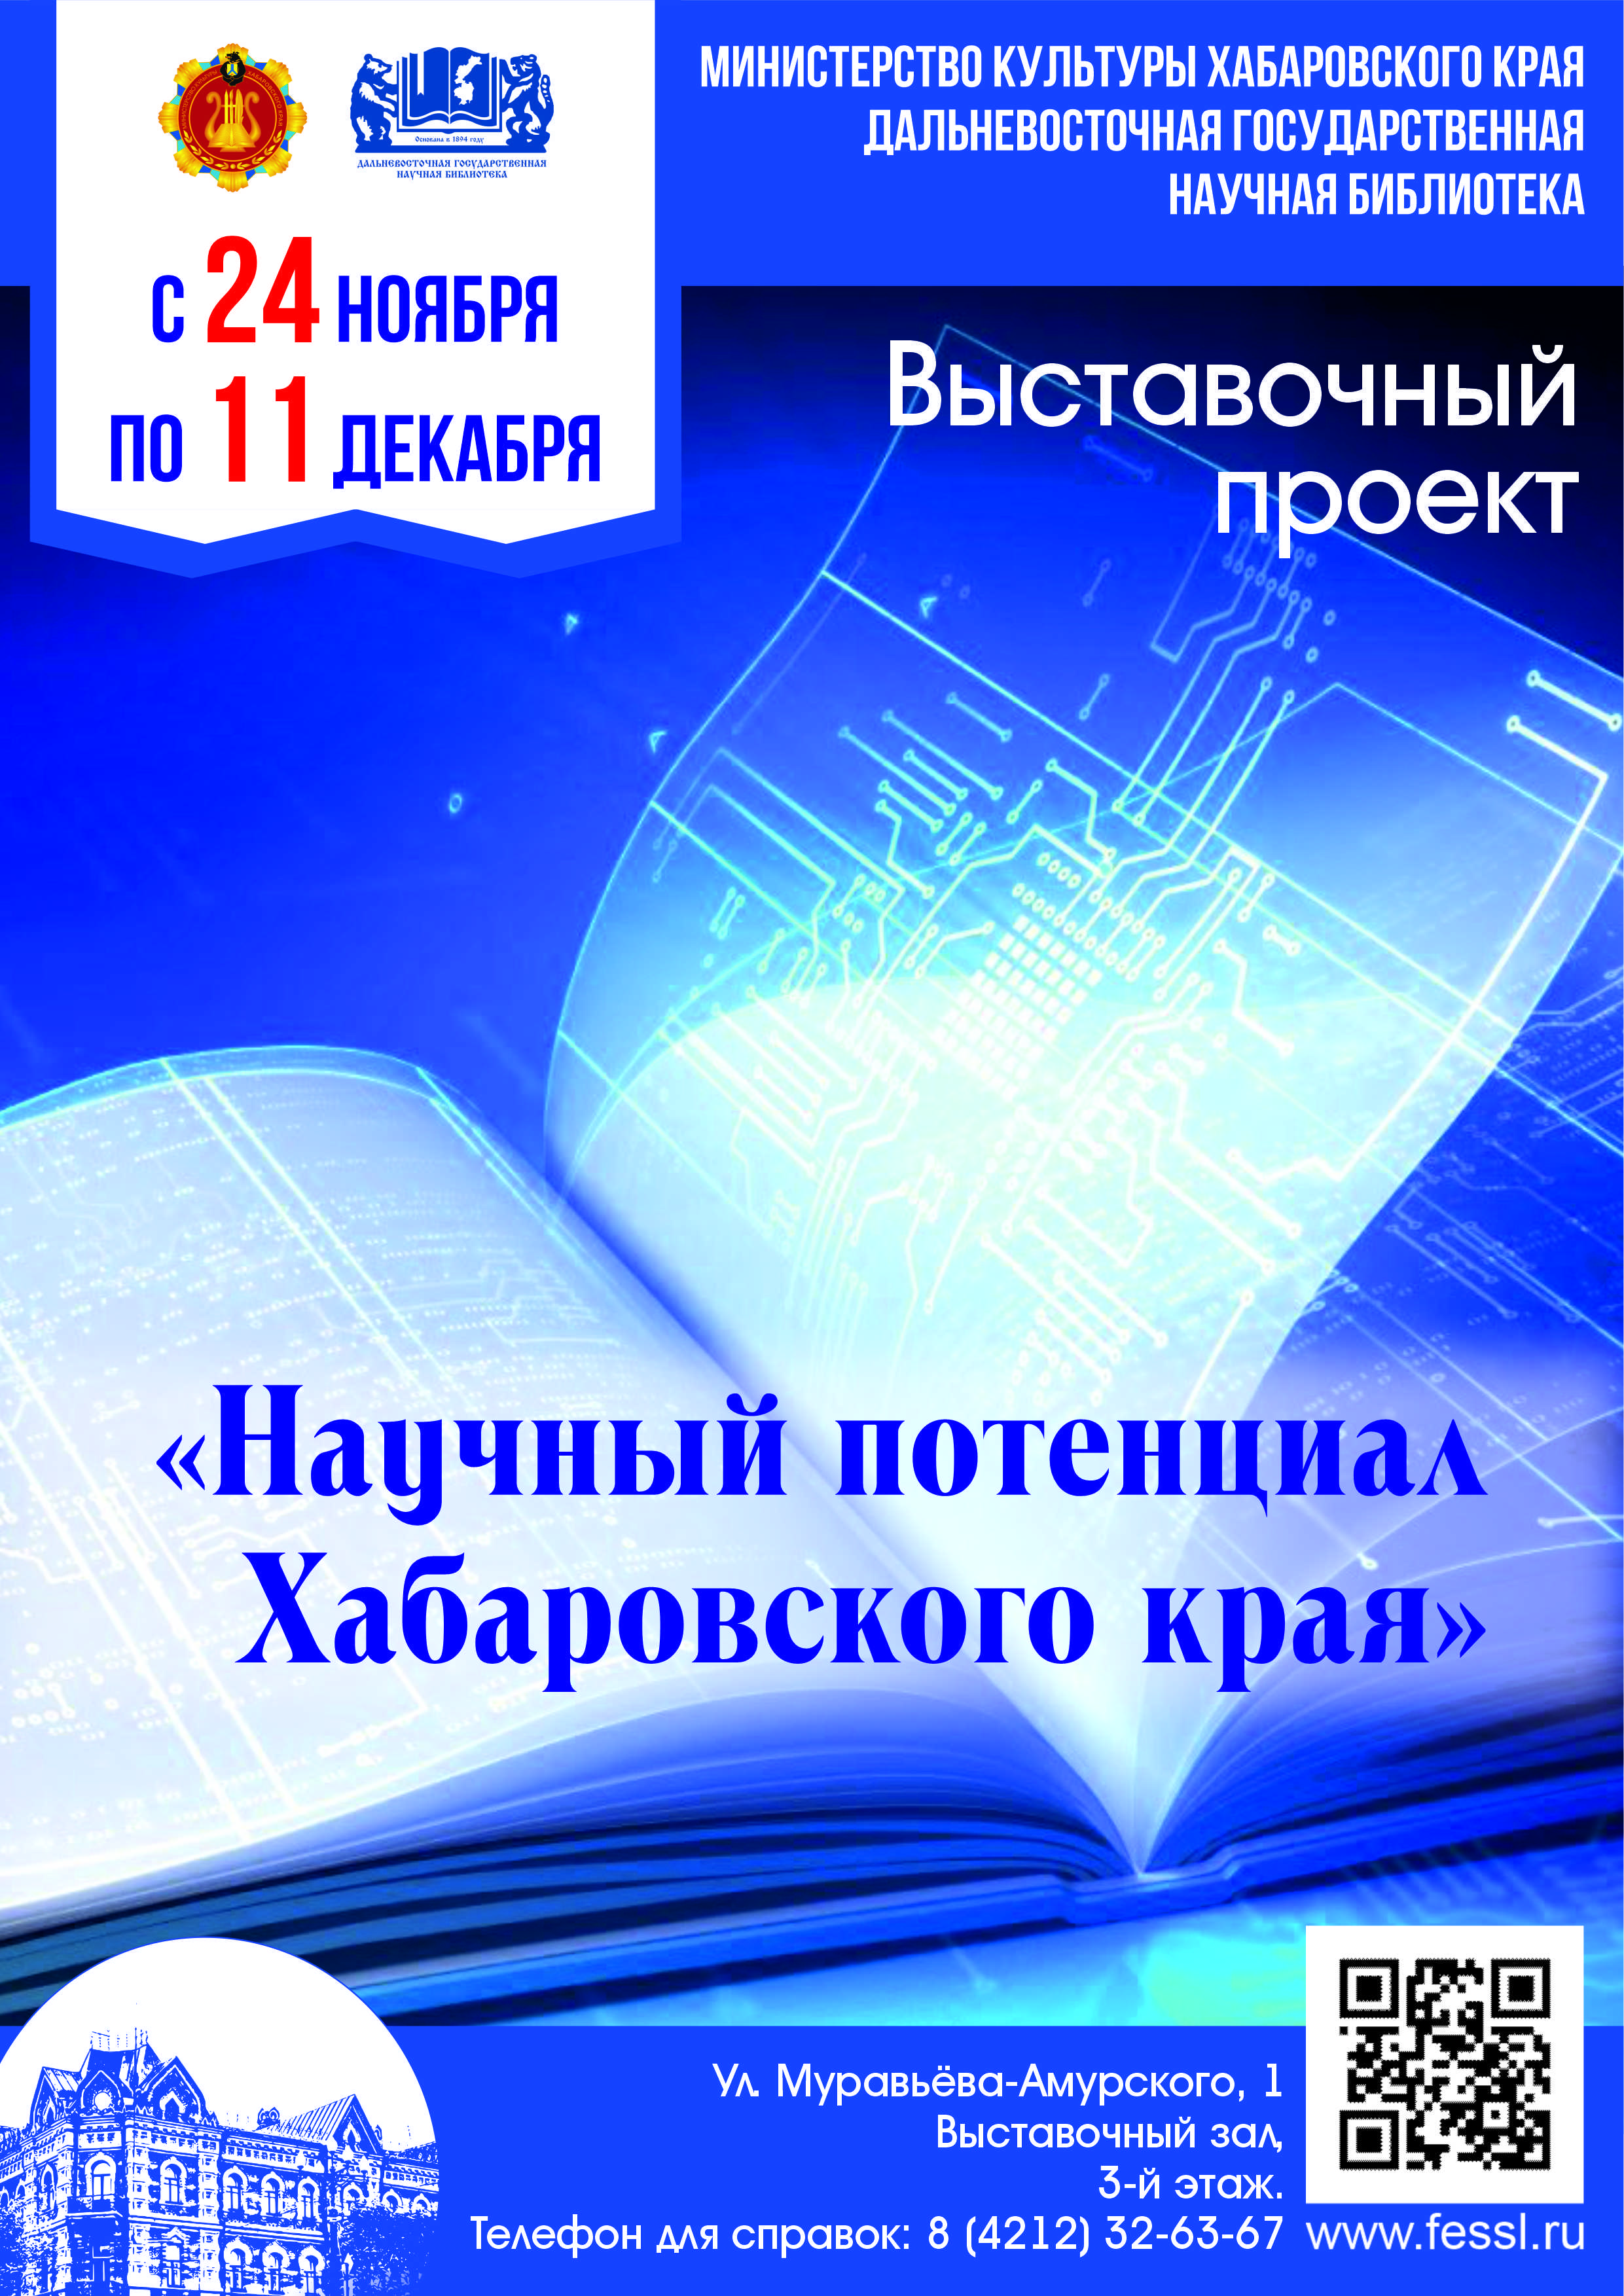 Выставочный проект о научных достижениях Хабаровского края